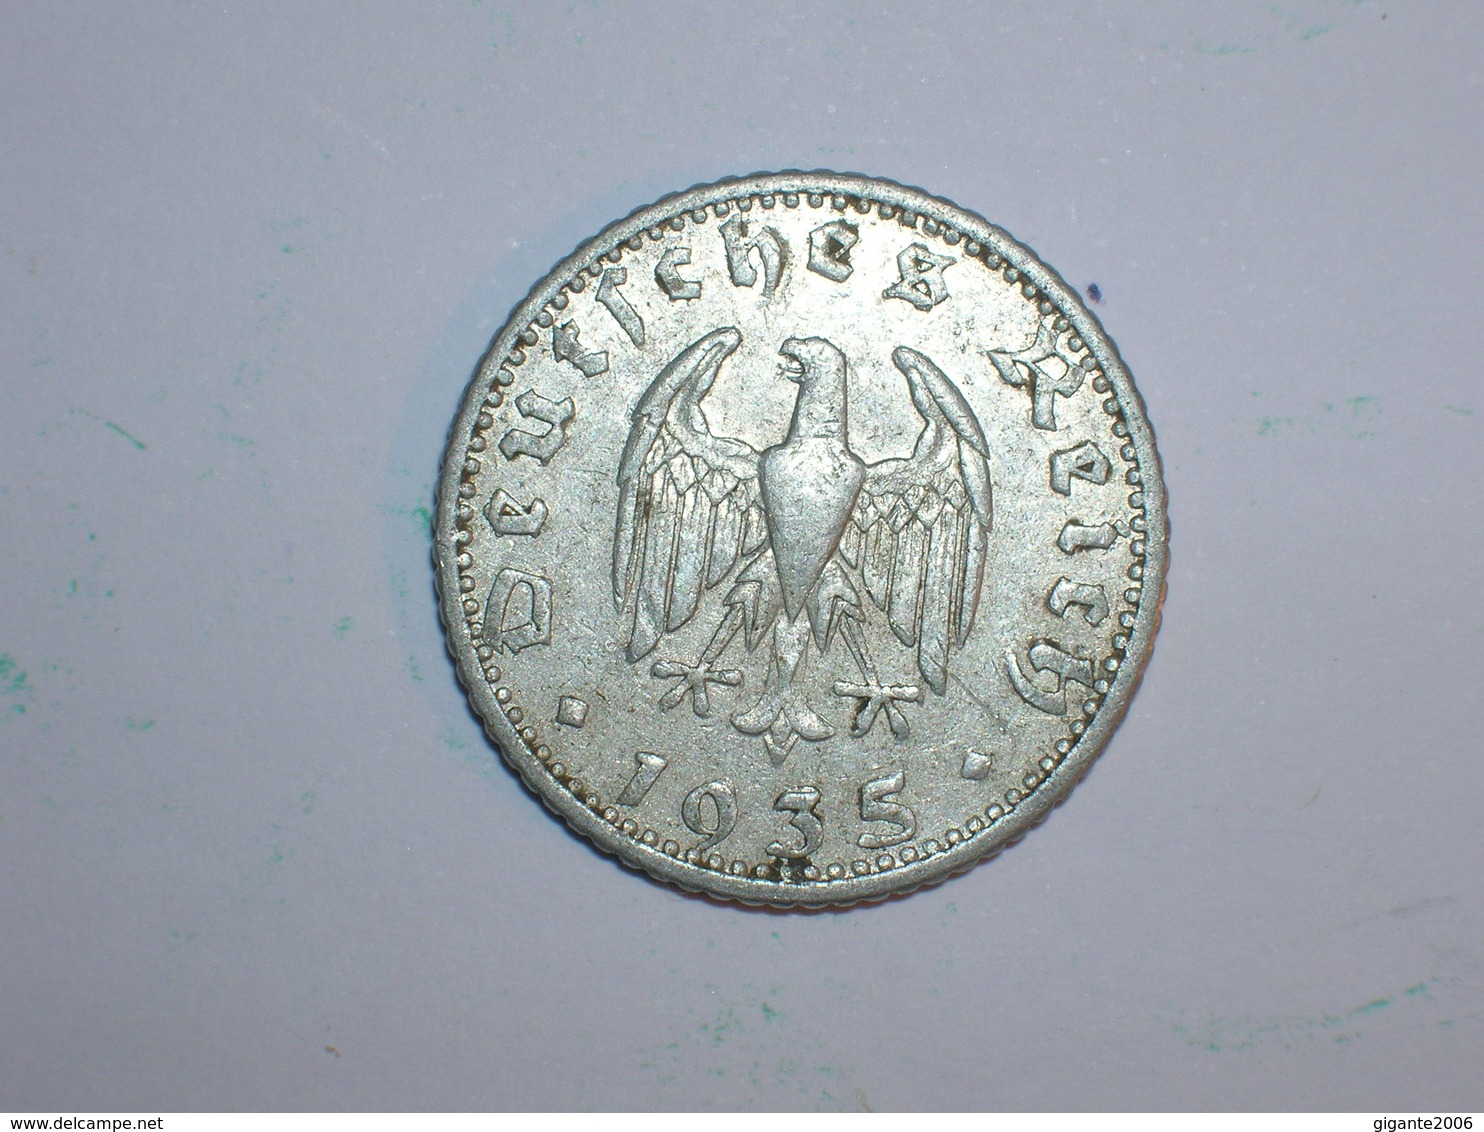 ALEMANIA 50 PFENNIG 1935 E (1219) - 50 Reichspfennig